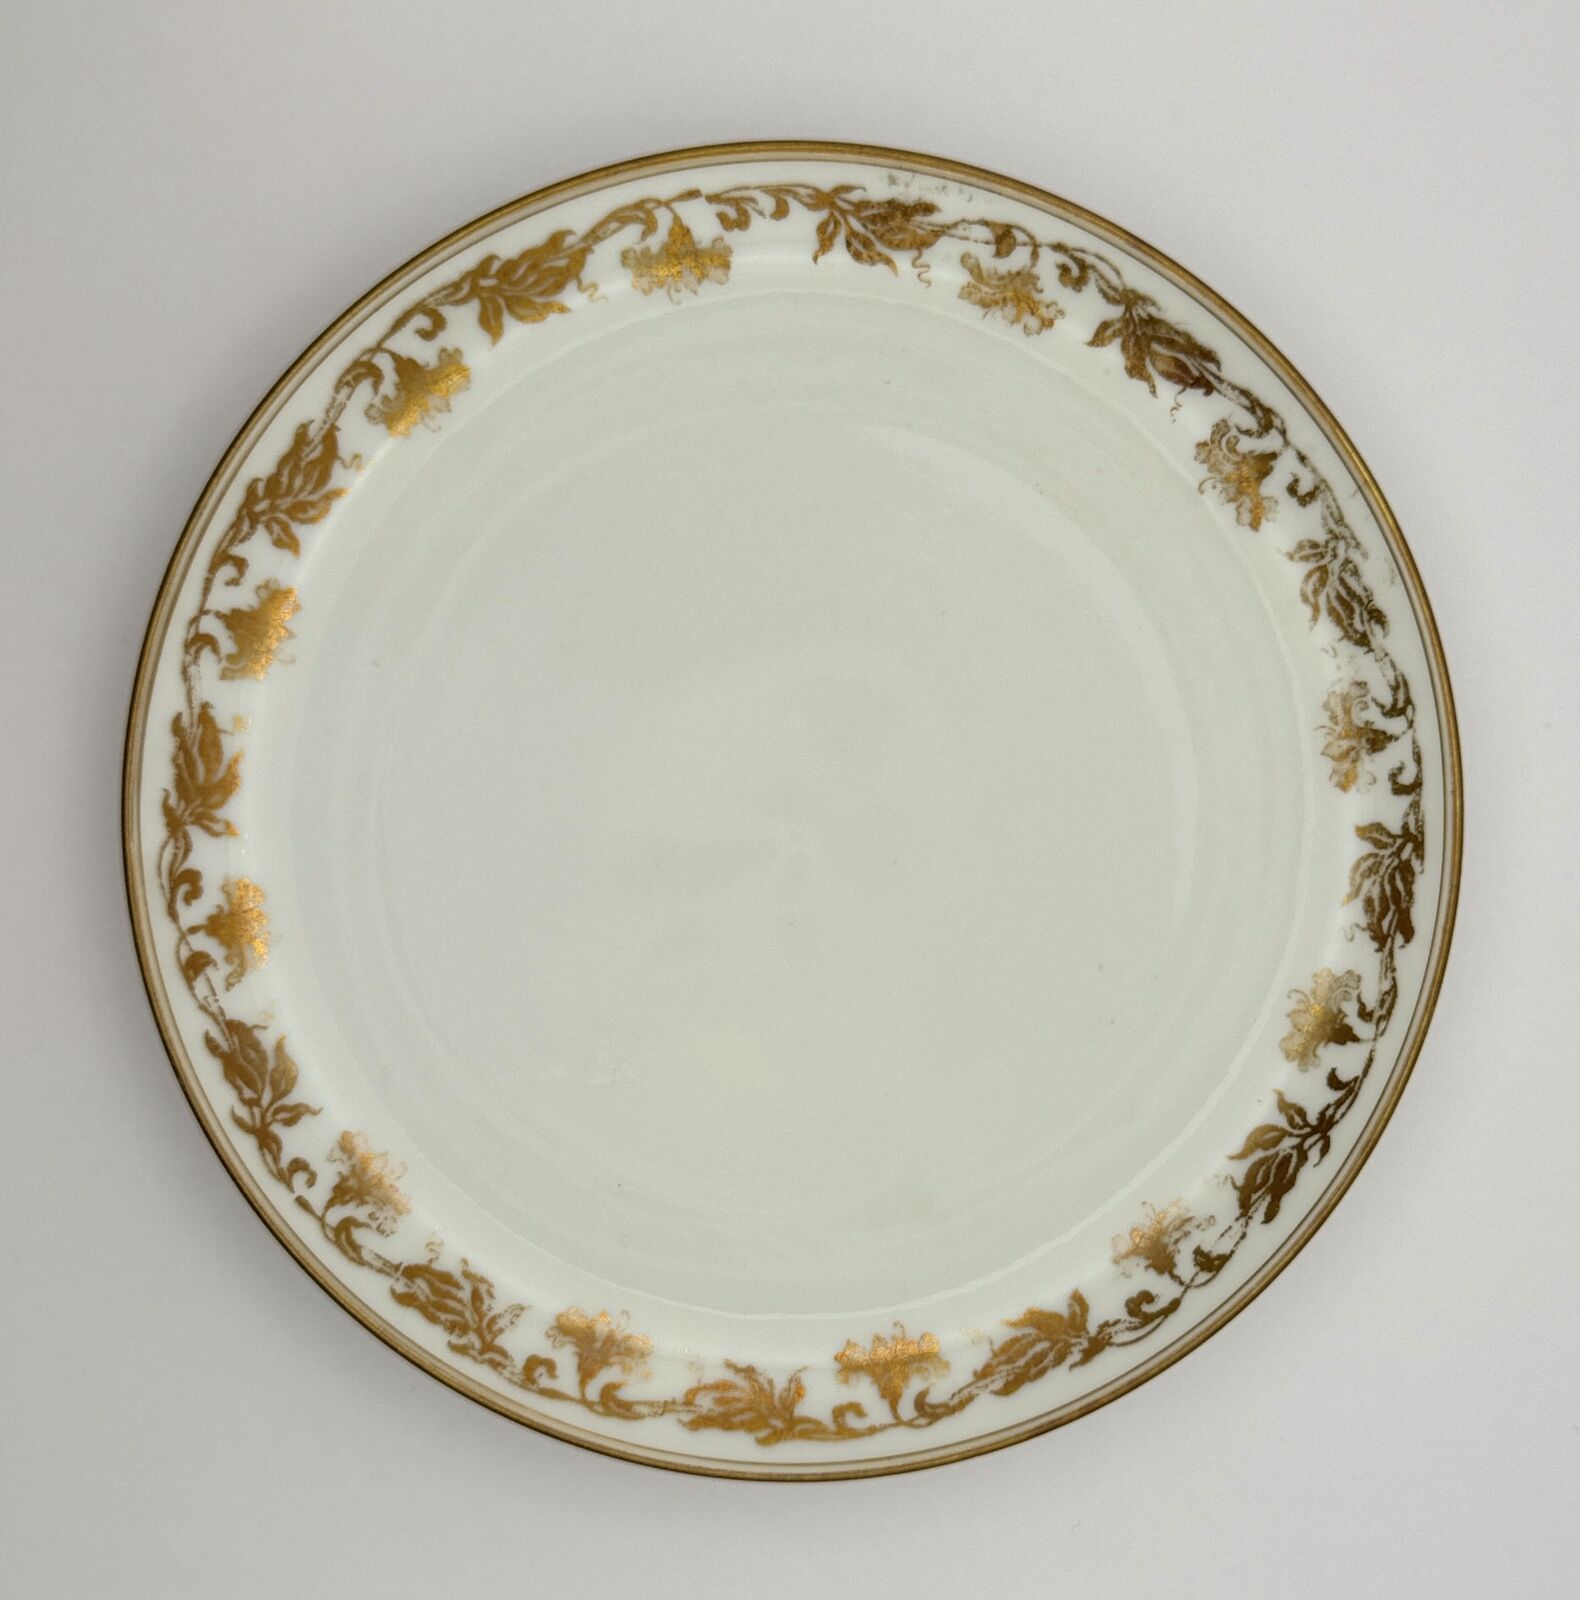 Antique Elegant Haviland & Co. Limoges Plate with Gold Floral Design